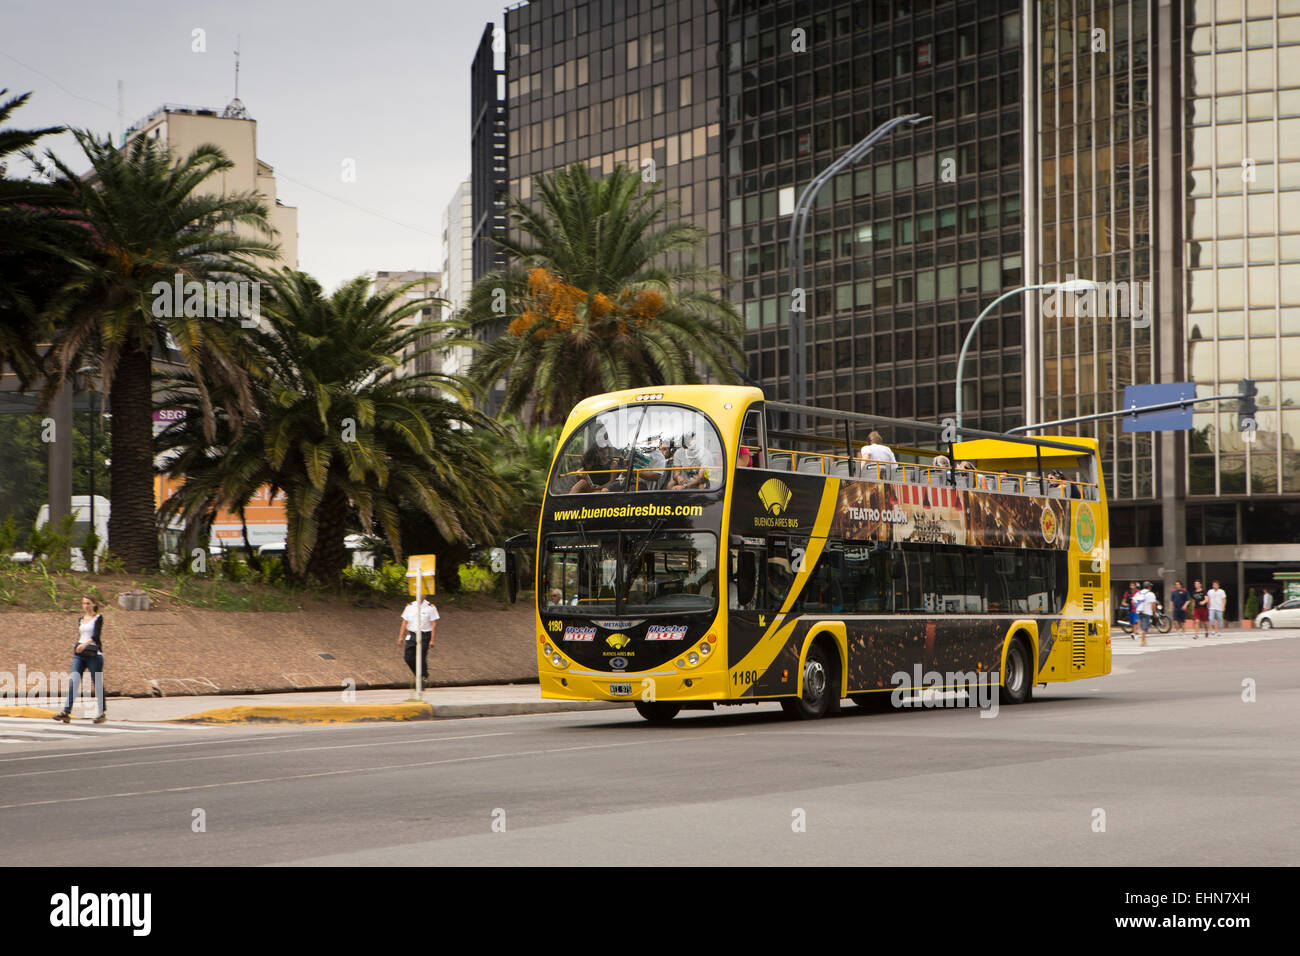 Argentina, Buenos Aires, Retiro, San Martin, yellow open top tourist bus  Stock Photo - Alamy